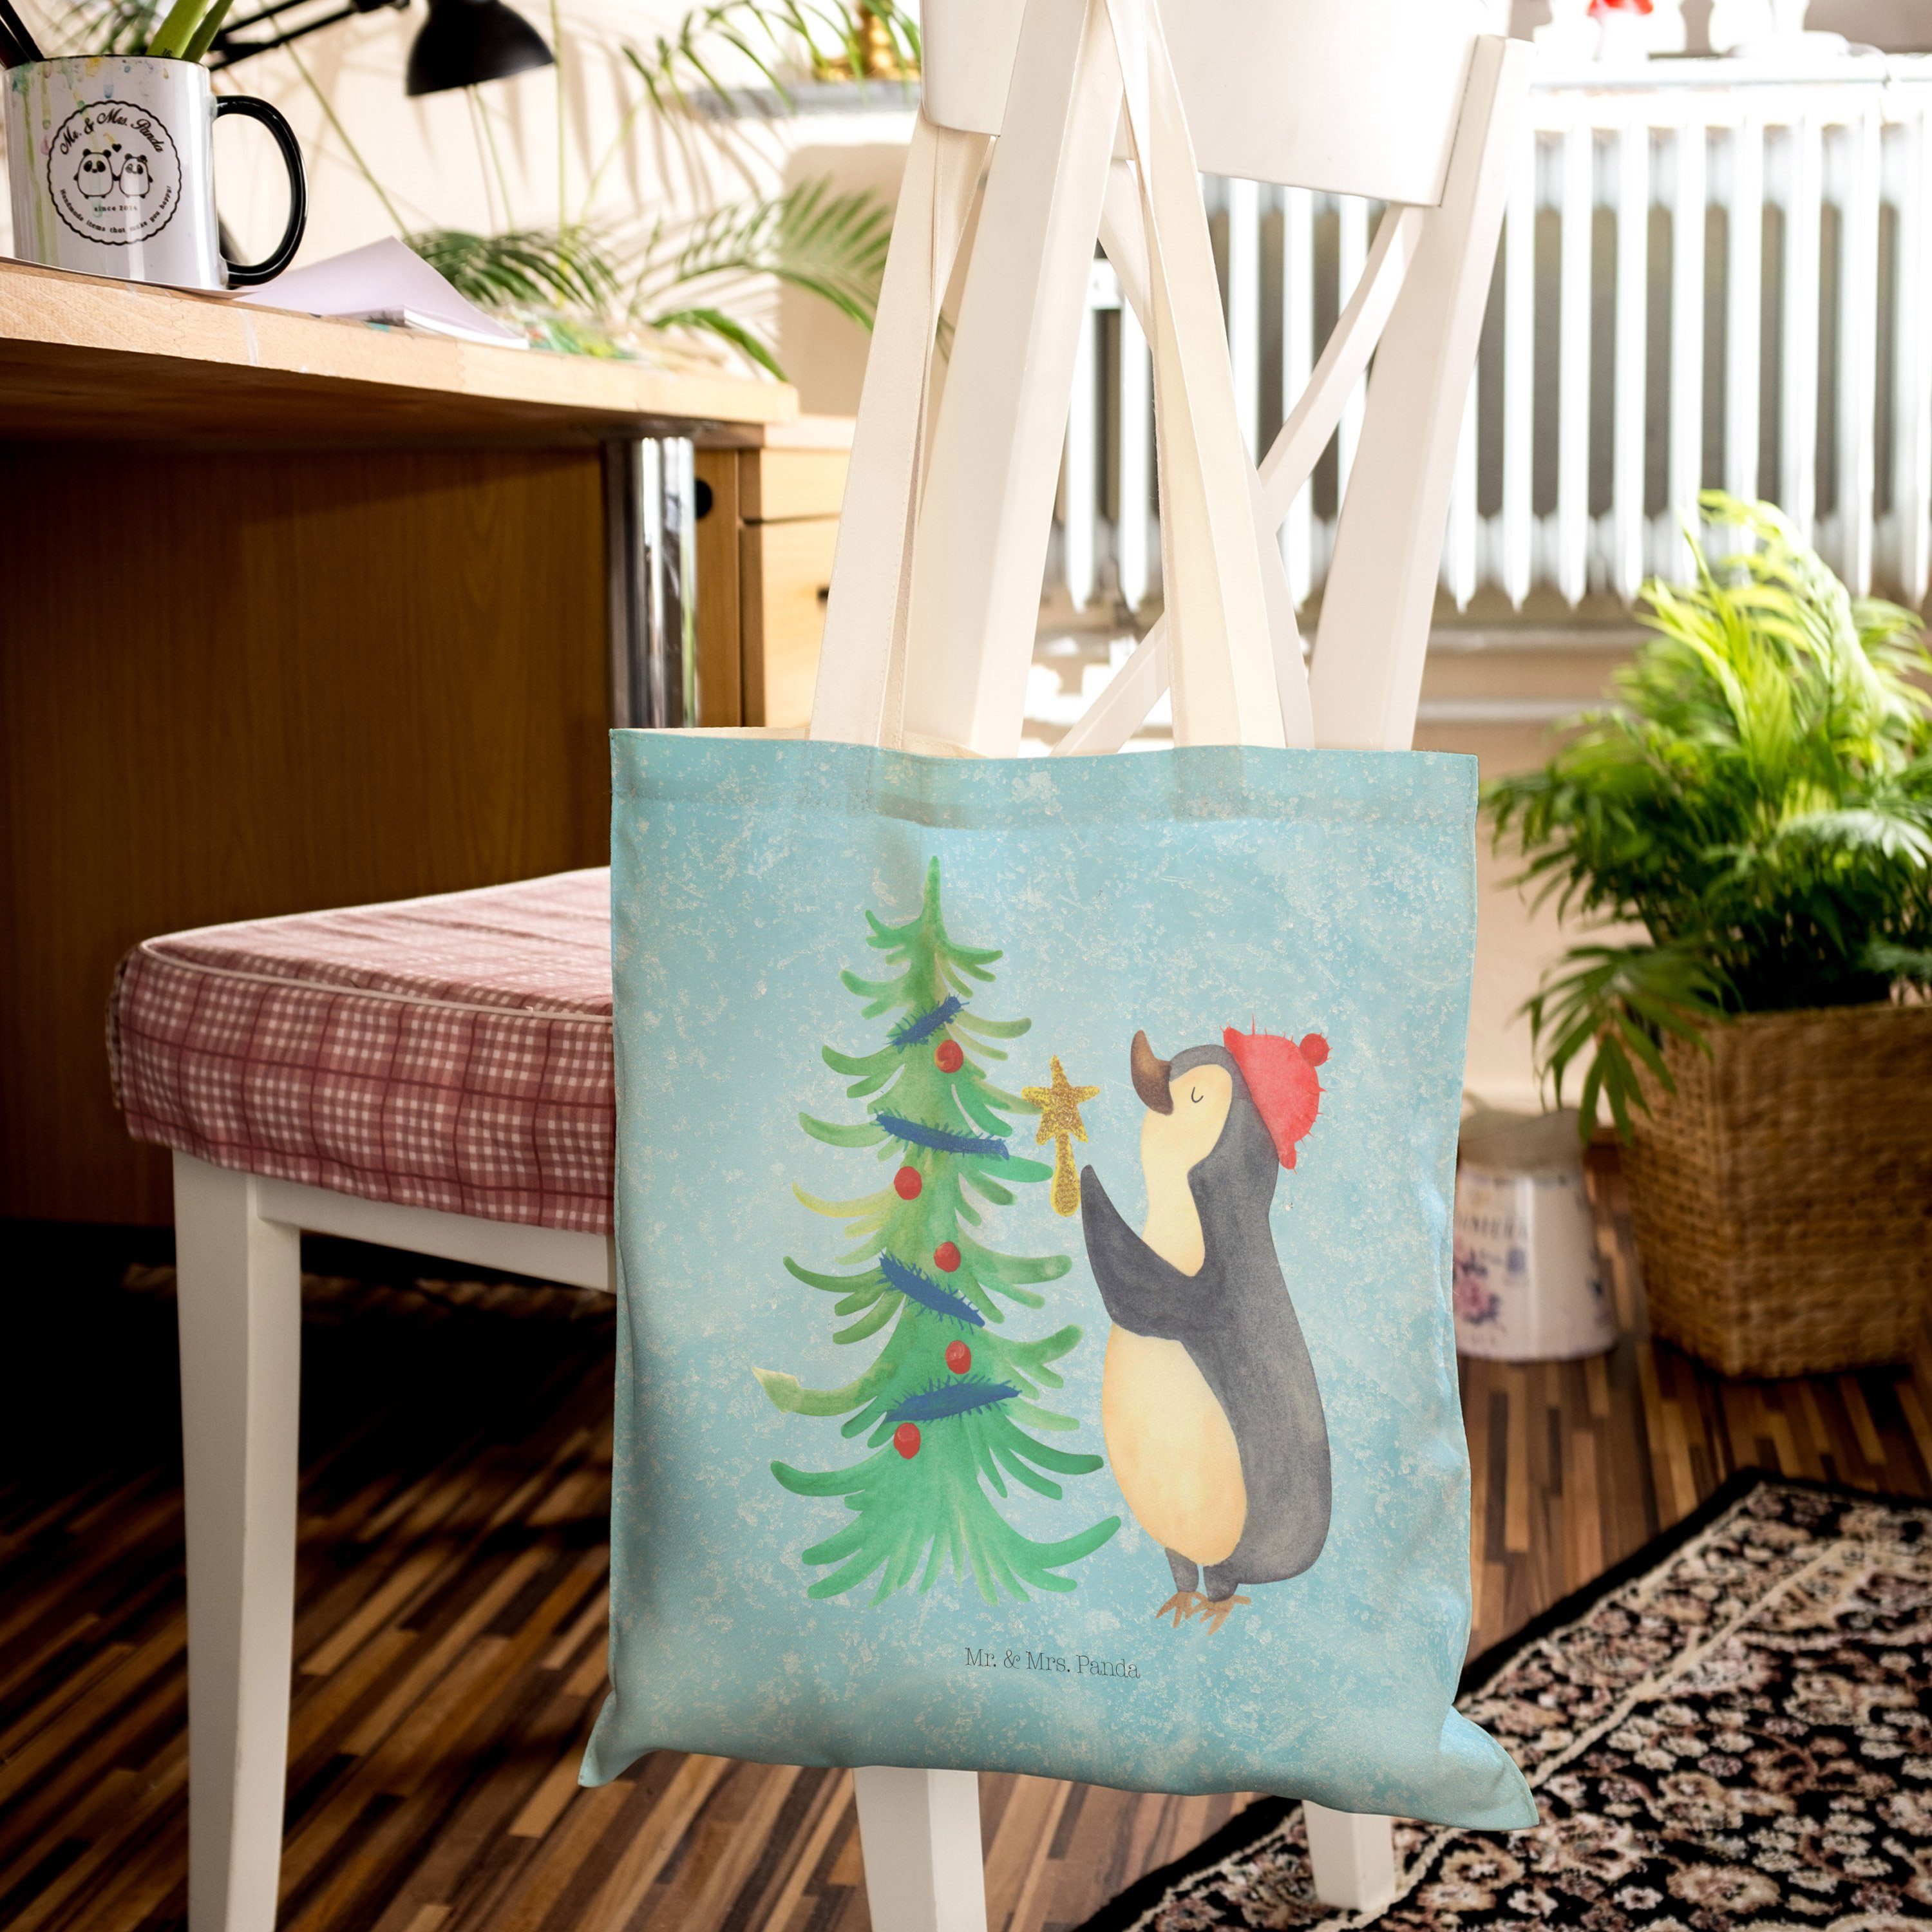 Mr. & Mrs. Panda - Pinguin - Geschenk, Baumwolltasche, Tragetas Eisblau Tragetasche Weihnachtsbaum (1-tlg)